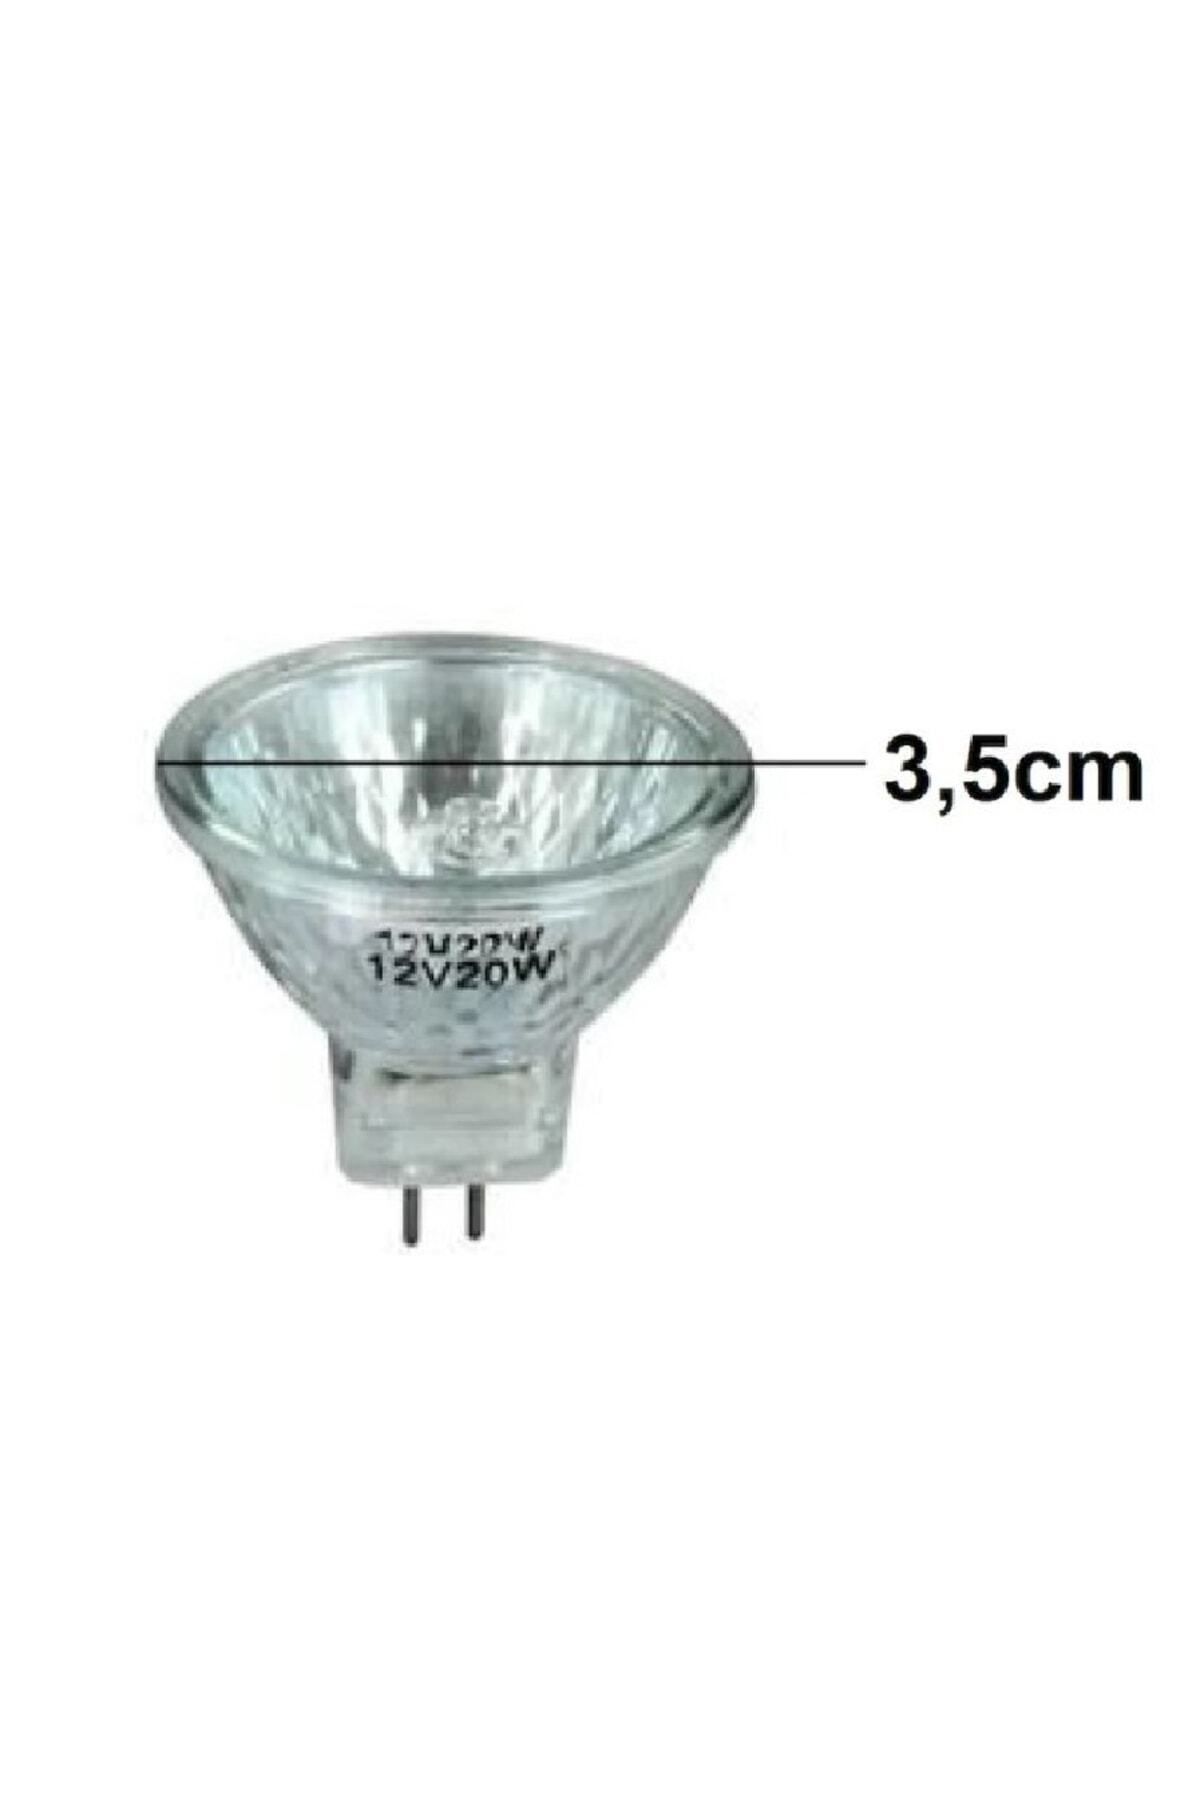 Arçelik P 70 (7808110100) Davlumbaz Aspiratör için Lamba 12V 20W 3,5cm Çanak Halojen Ampul Spot Işık